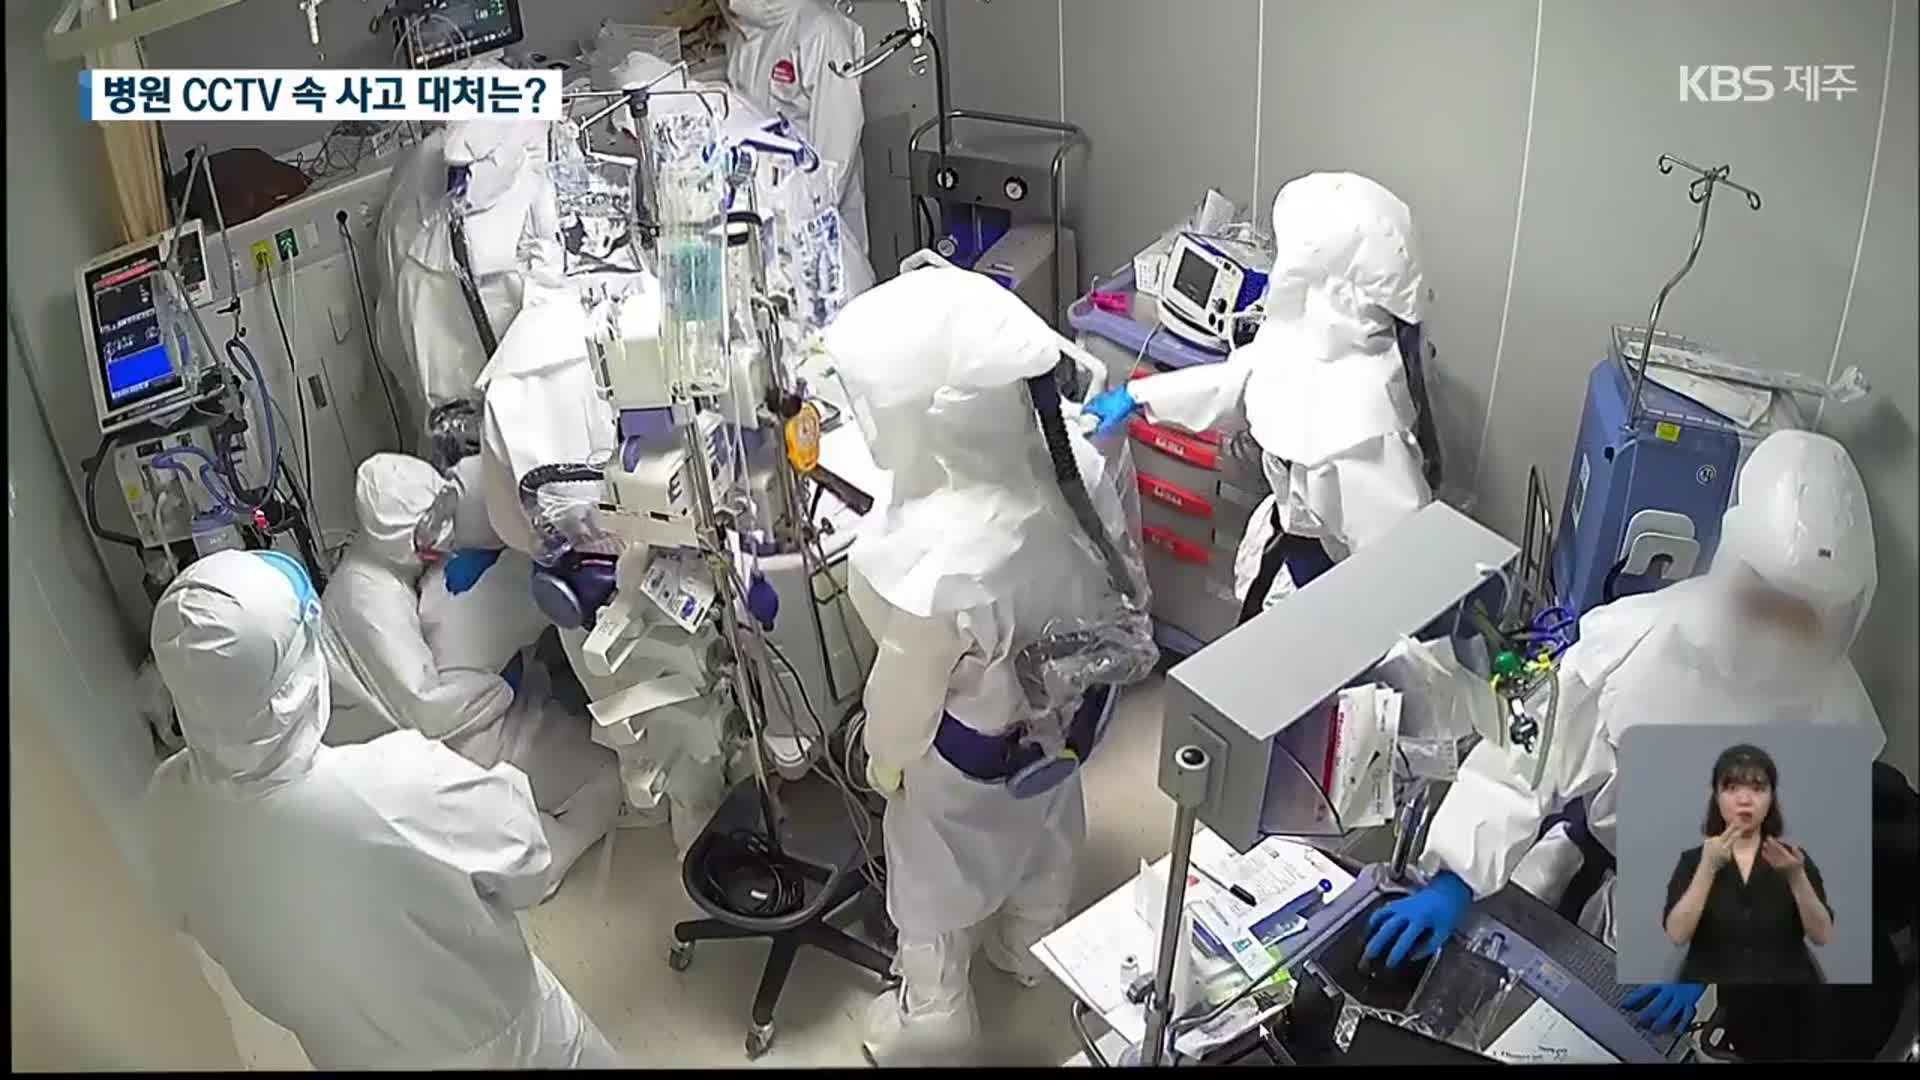 ‘유림이 사망사고’ 병원 내부 CCTV 단독 입수